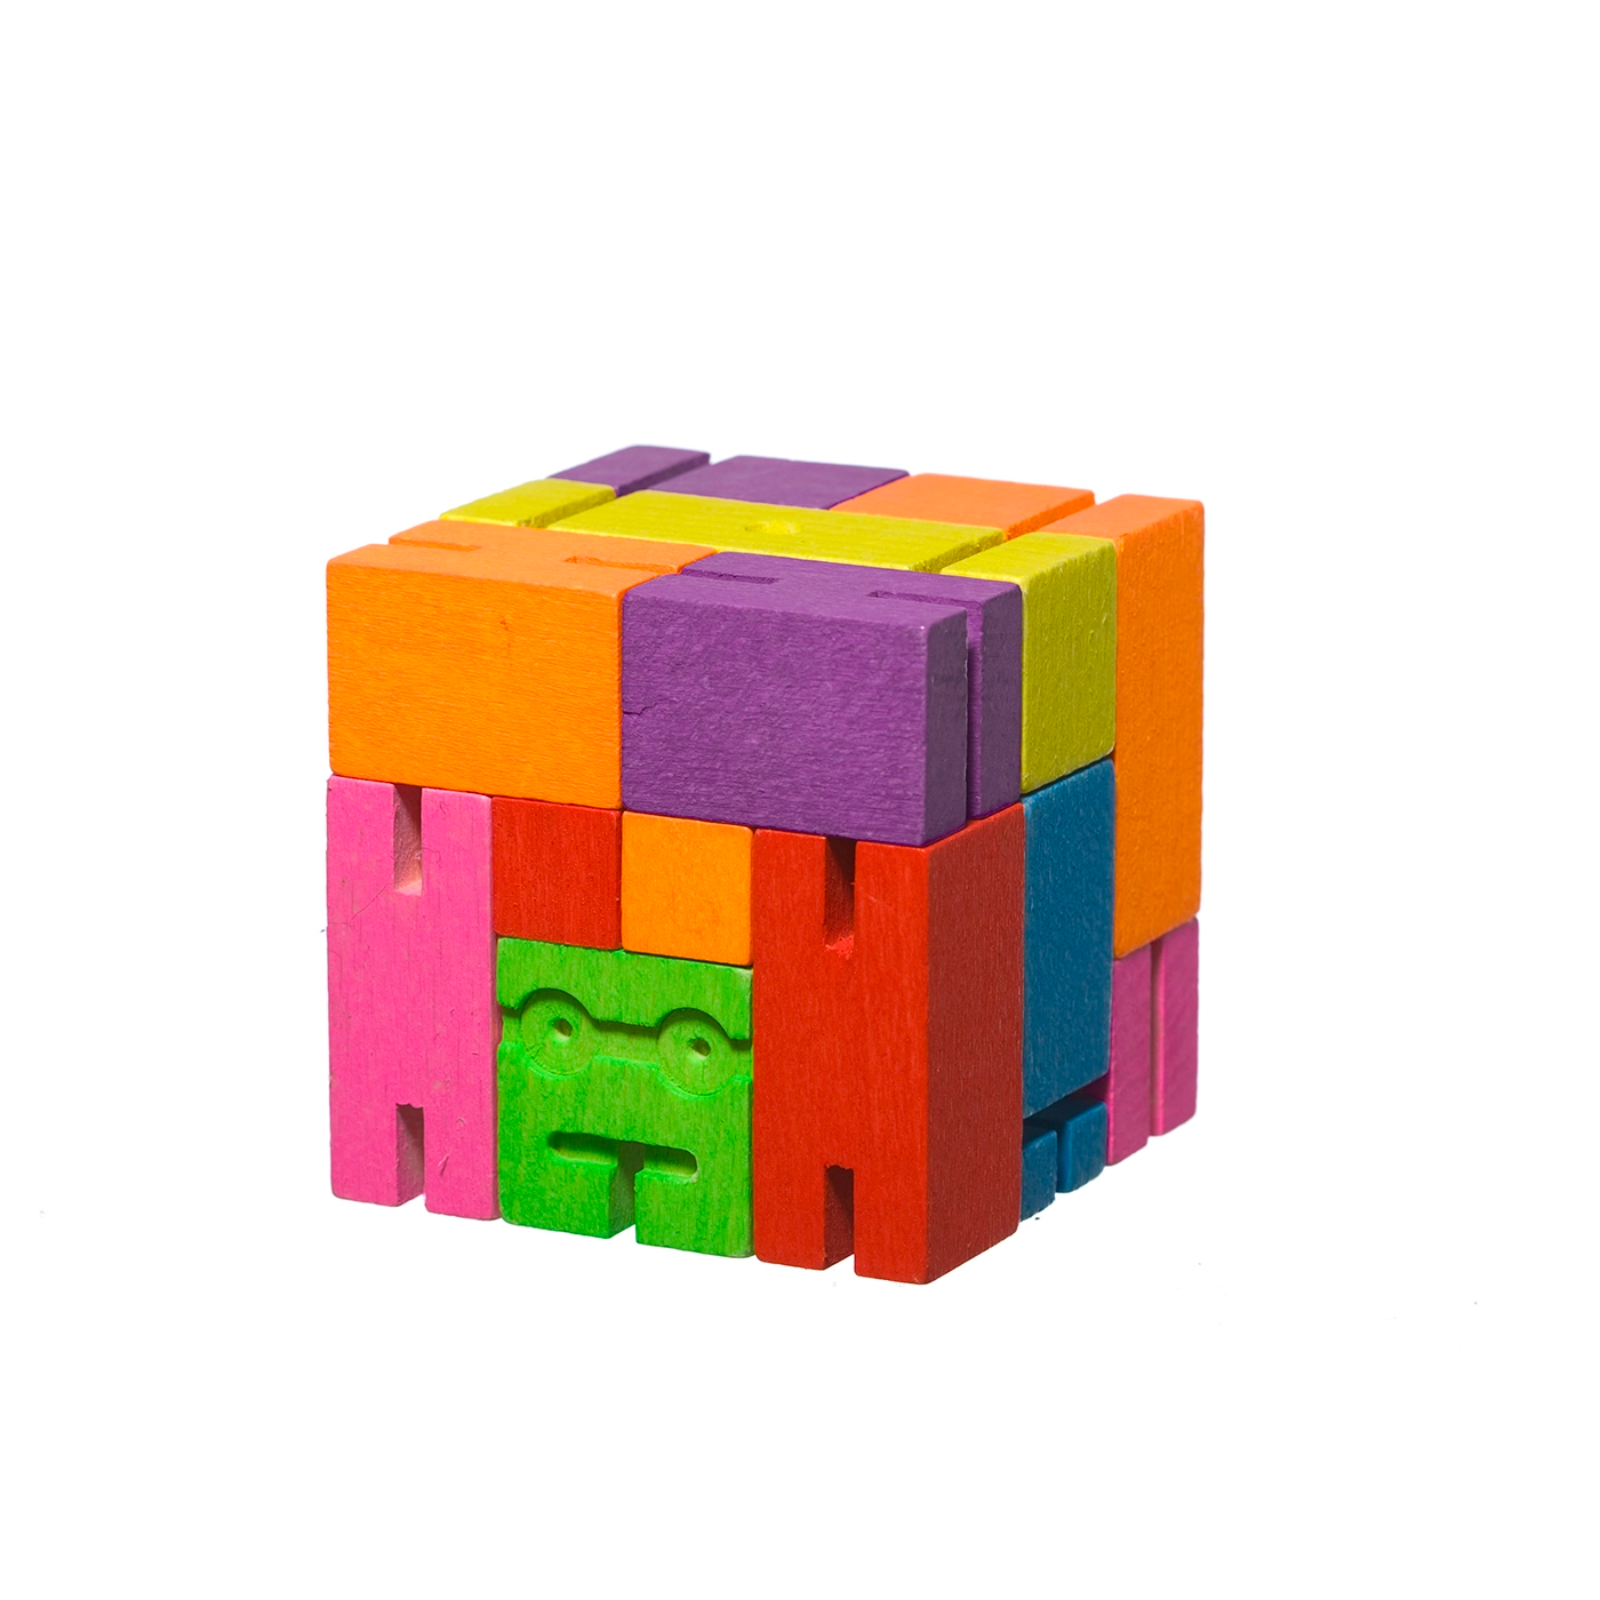 Cubebot Medium - Multi